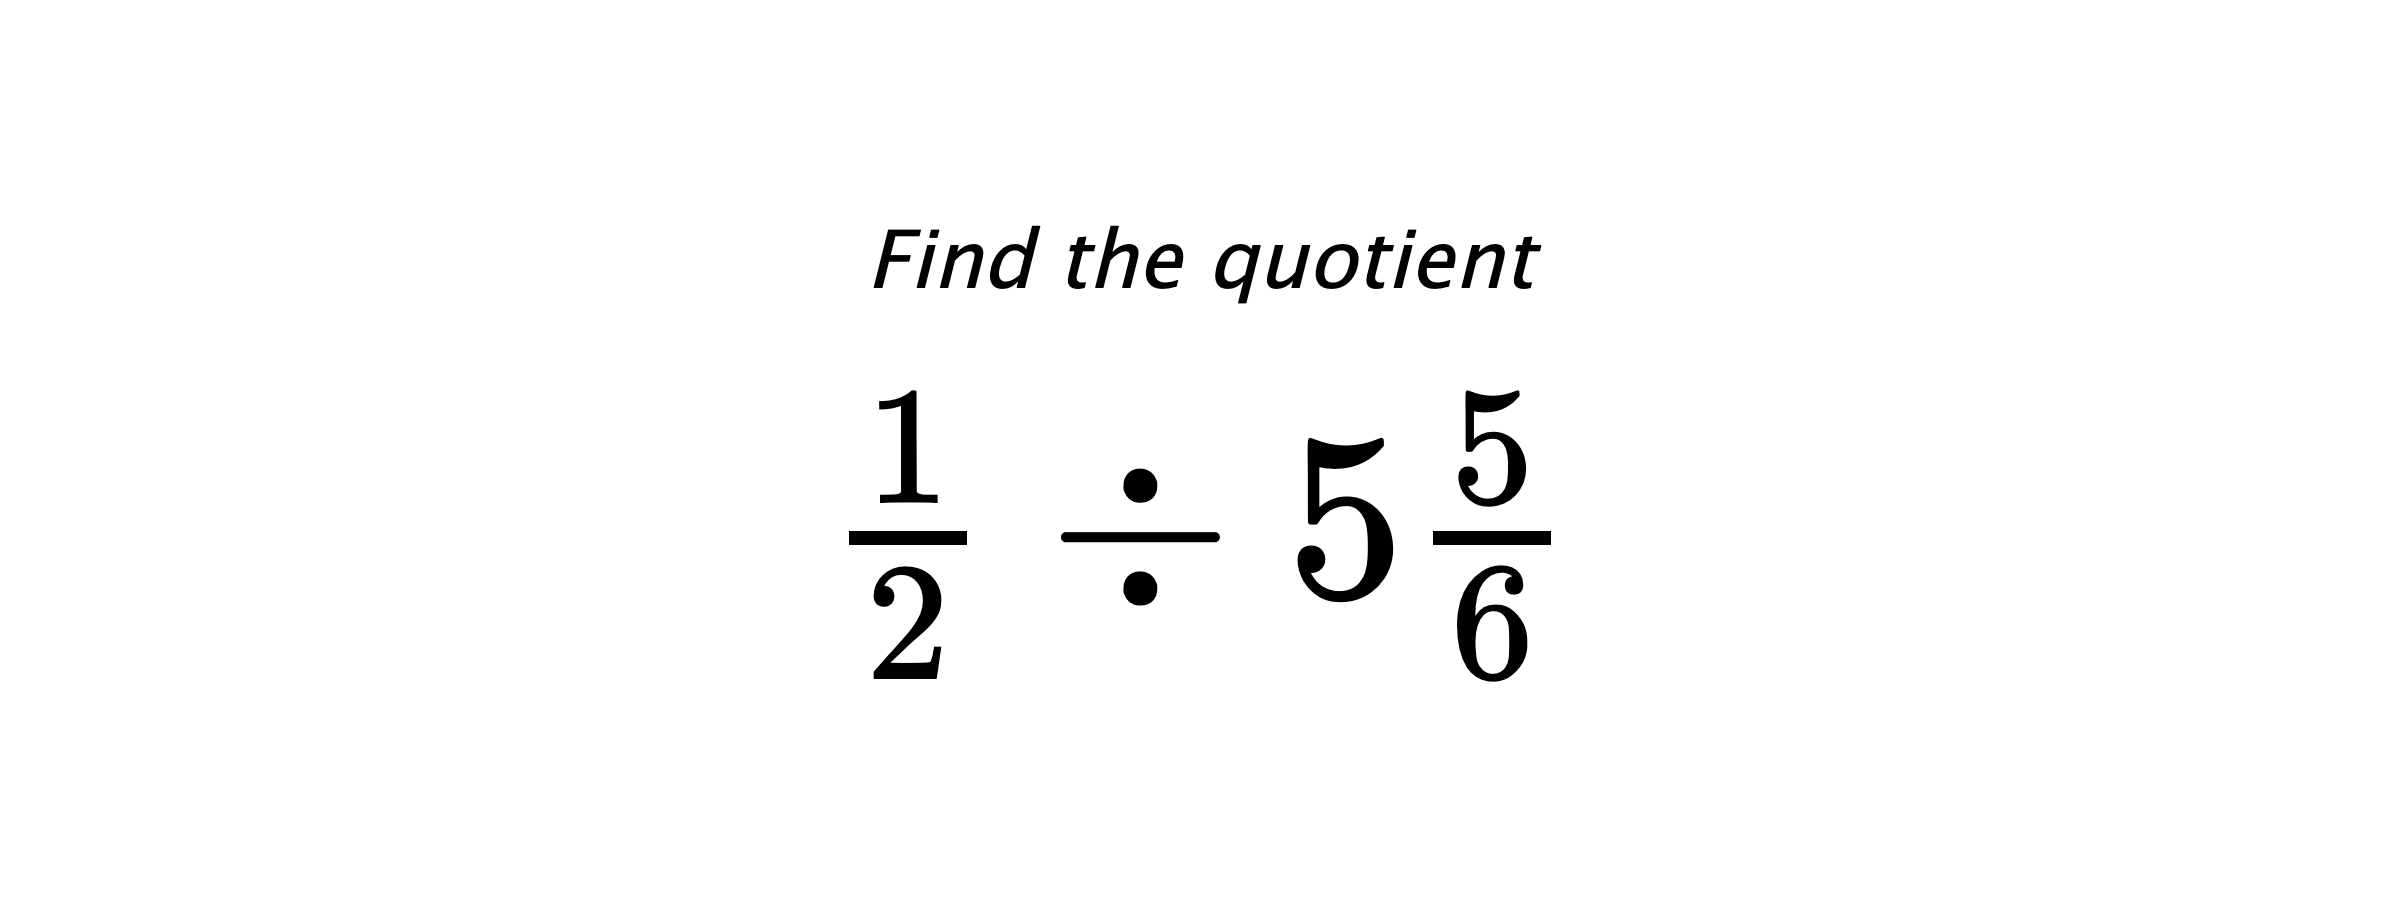 Find the quotient $ \frac{1}{2} \div 5\frac{5}{6} $